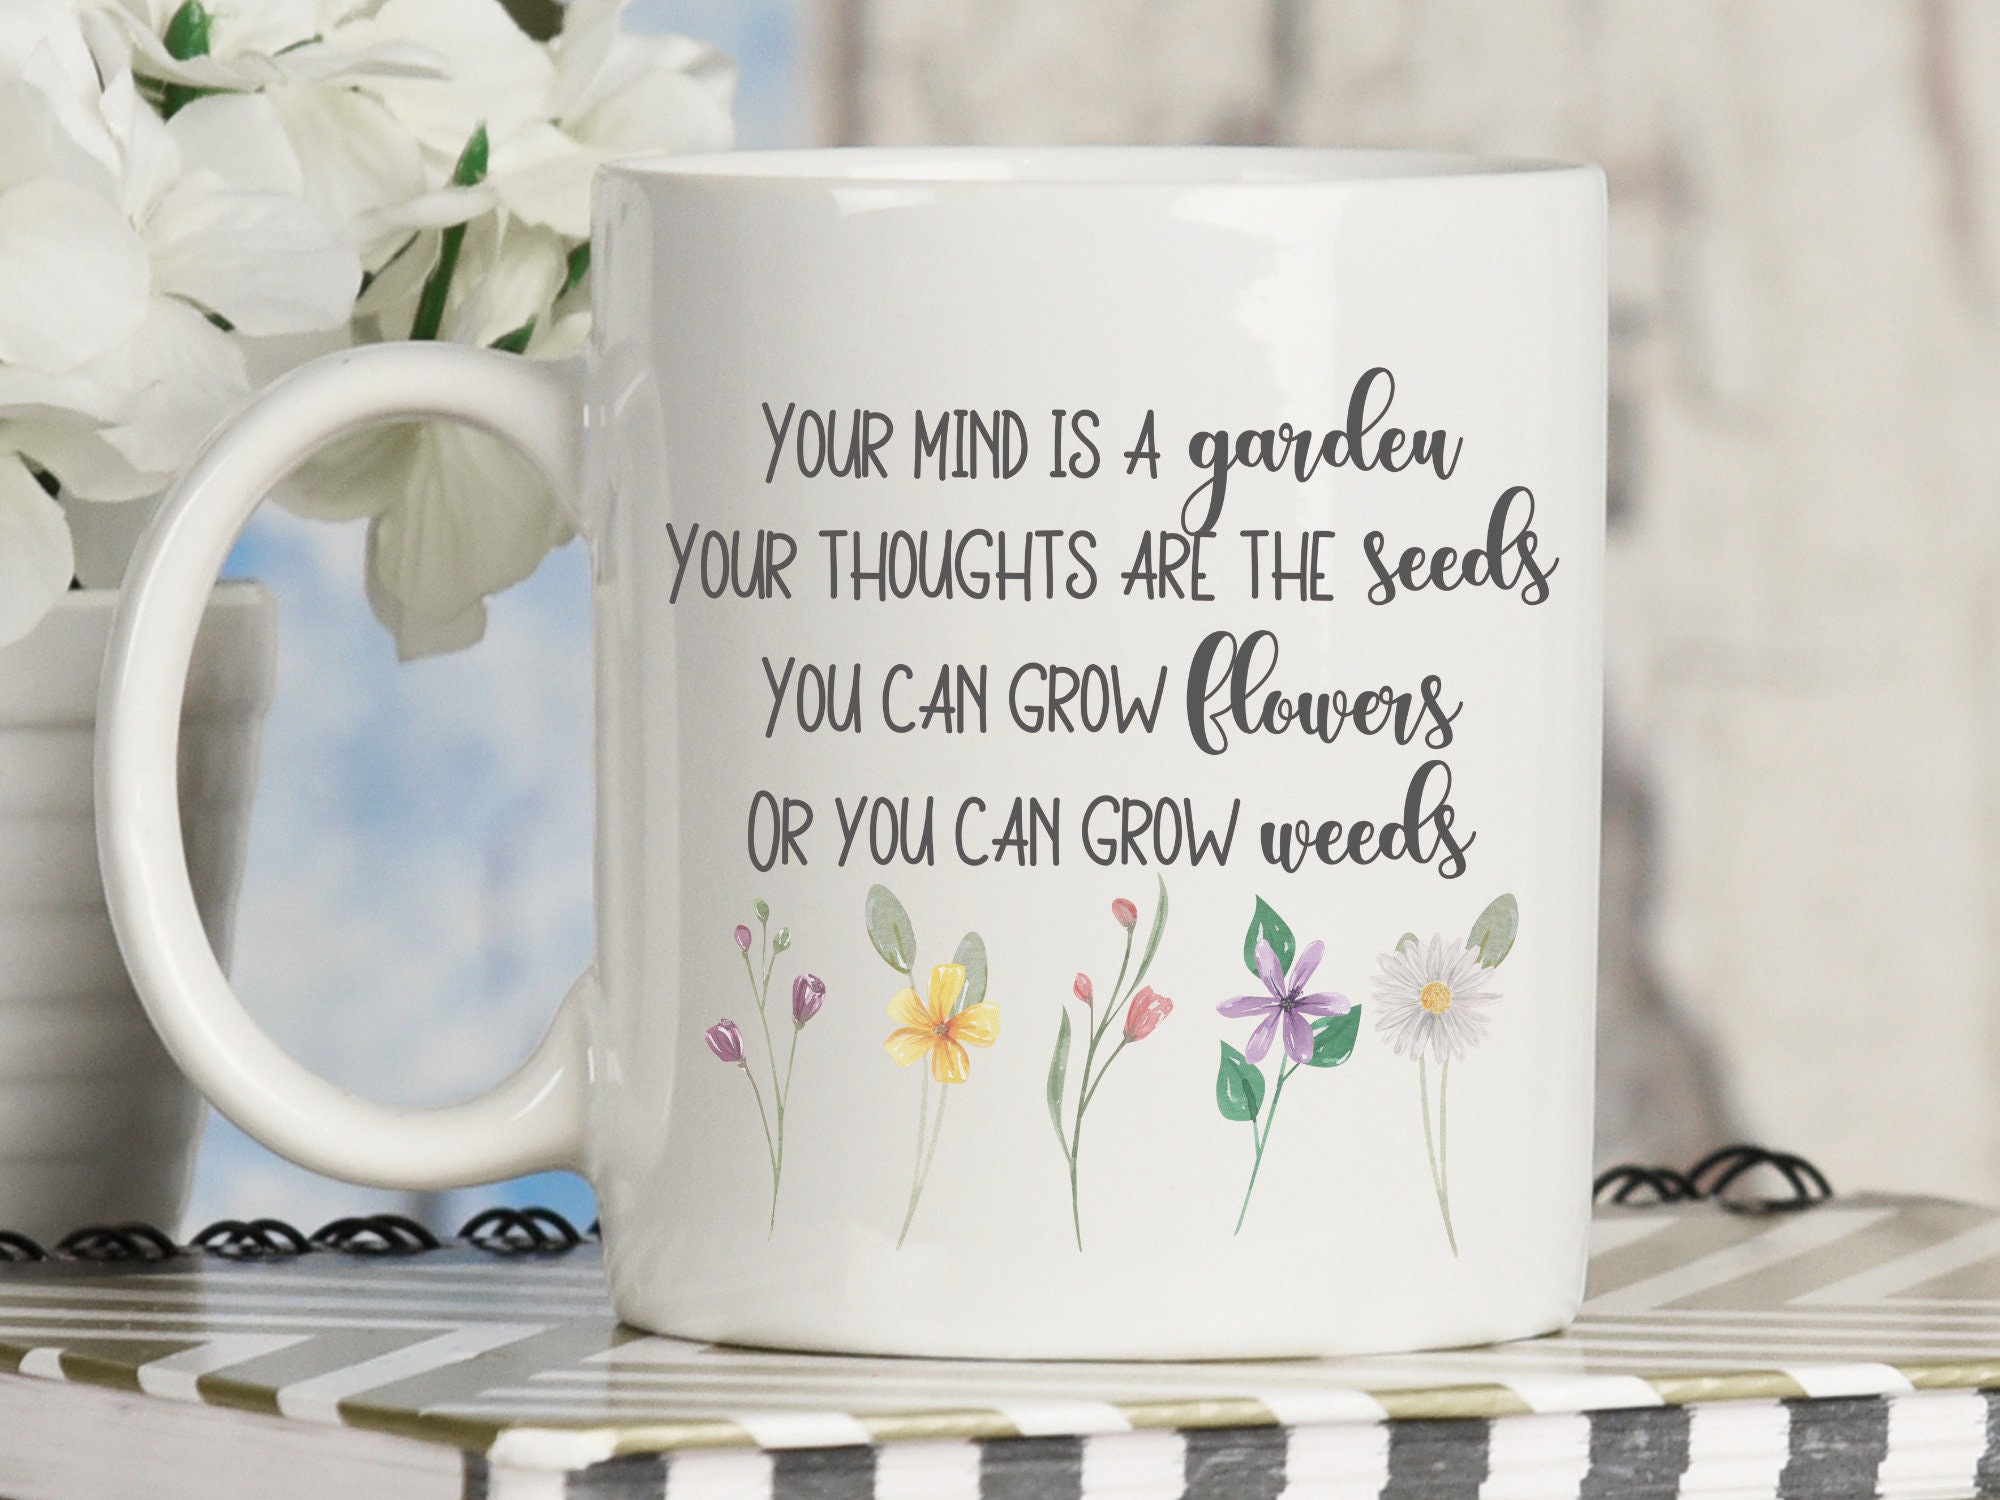 Your mind is a garden coffee mug, Spring coffee mug, Inspirational mug, Plant mug, Grow positive thoughts coffee mug with plants and floral